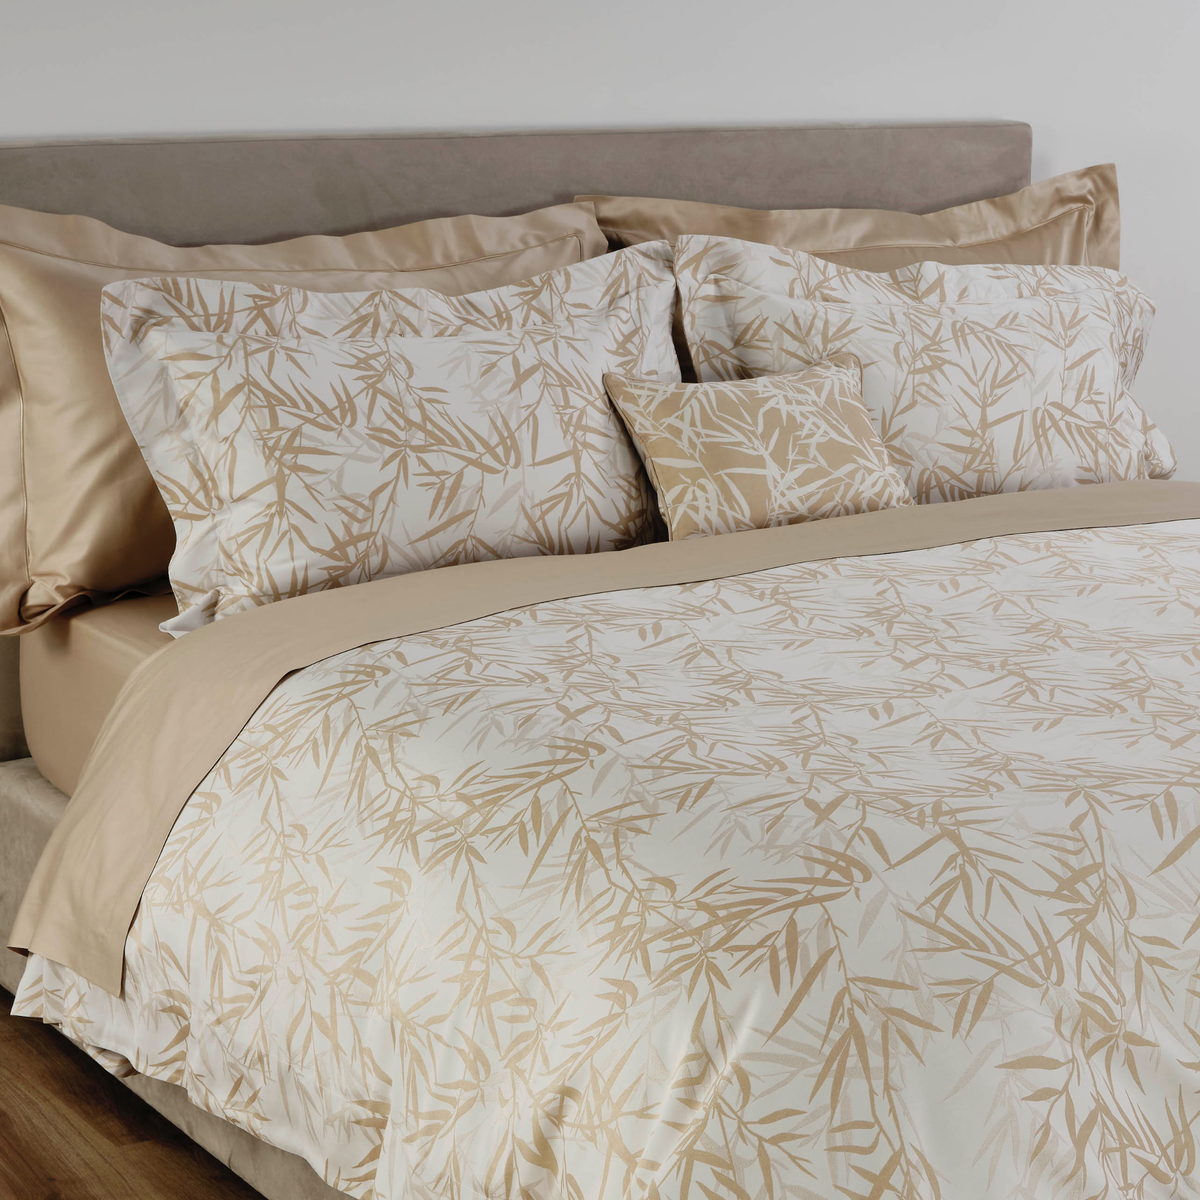 Celso de Lemos Bamboo Bedding Sheets And Pillows Powder